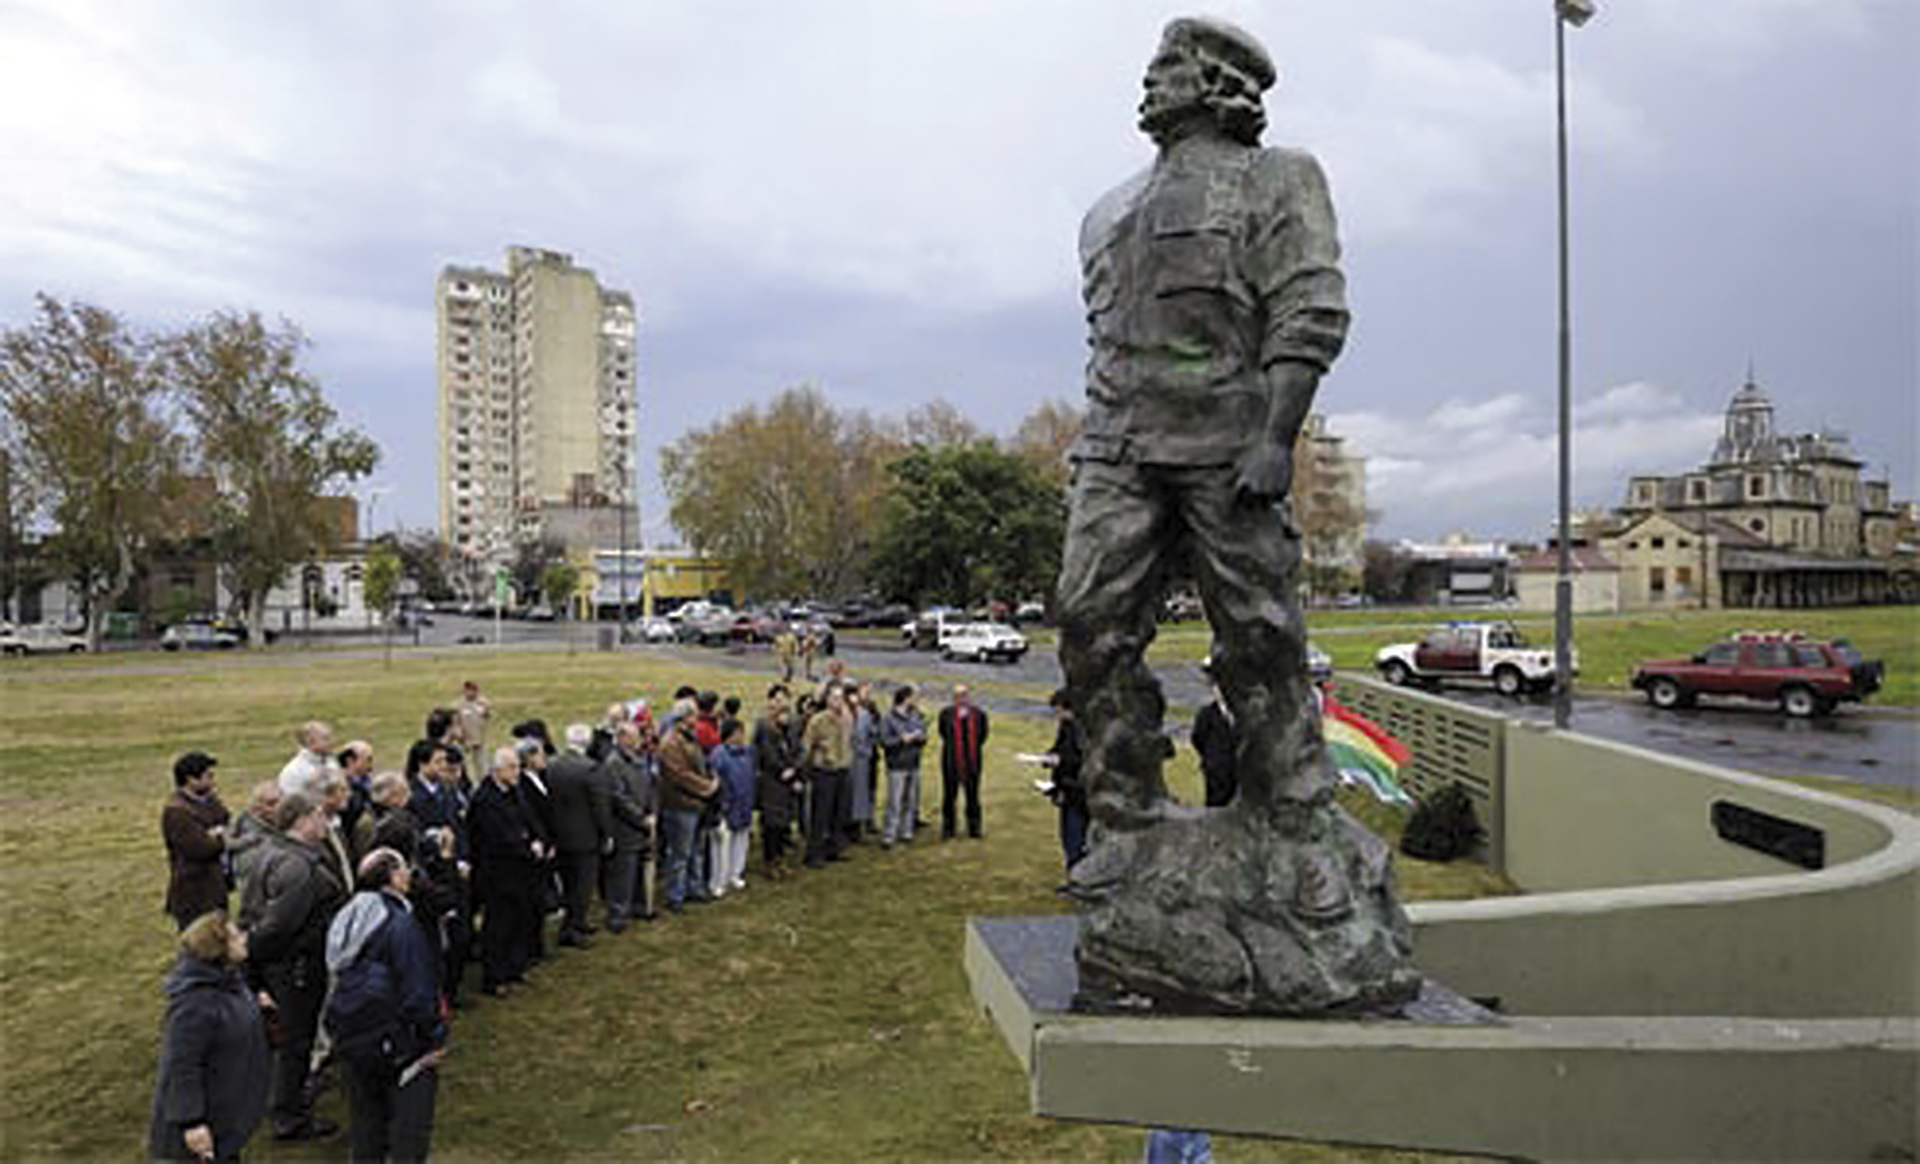 Estatua de Guevara en plaza que lleva su nombre: La escultura se realizó con 75 mil llaves que donaron vecinos y celebridades (Crédito: Gentileza Revista Barullo)